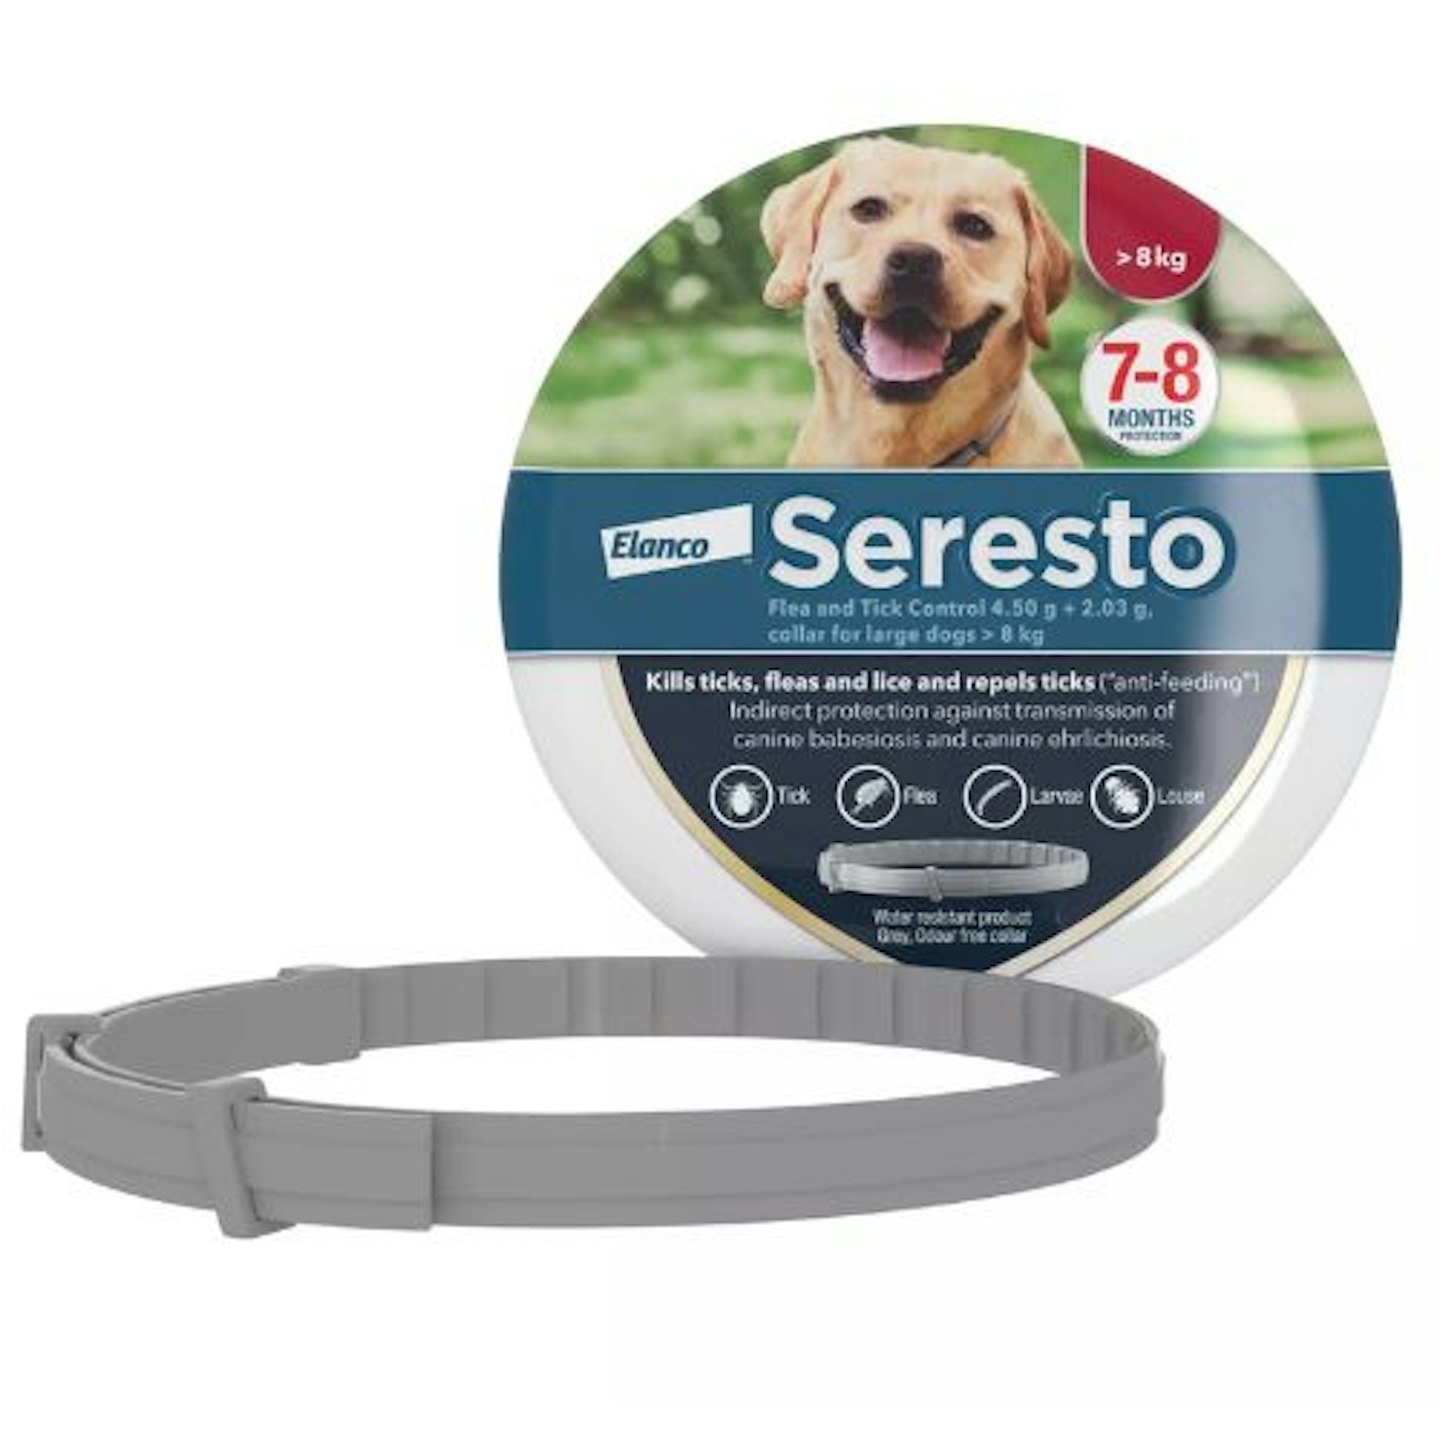 Seresto Flea Collar For Dogs (over 8kg)